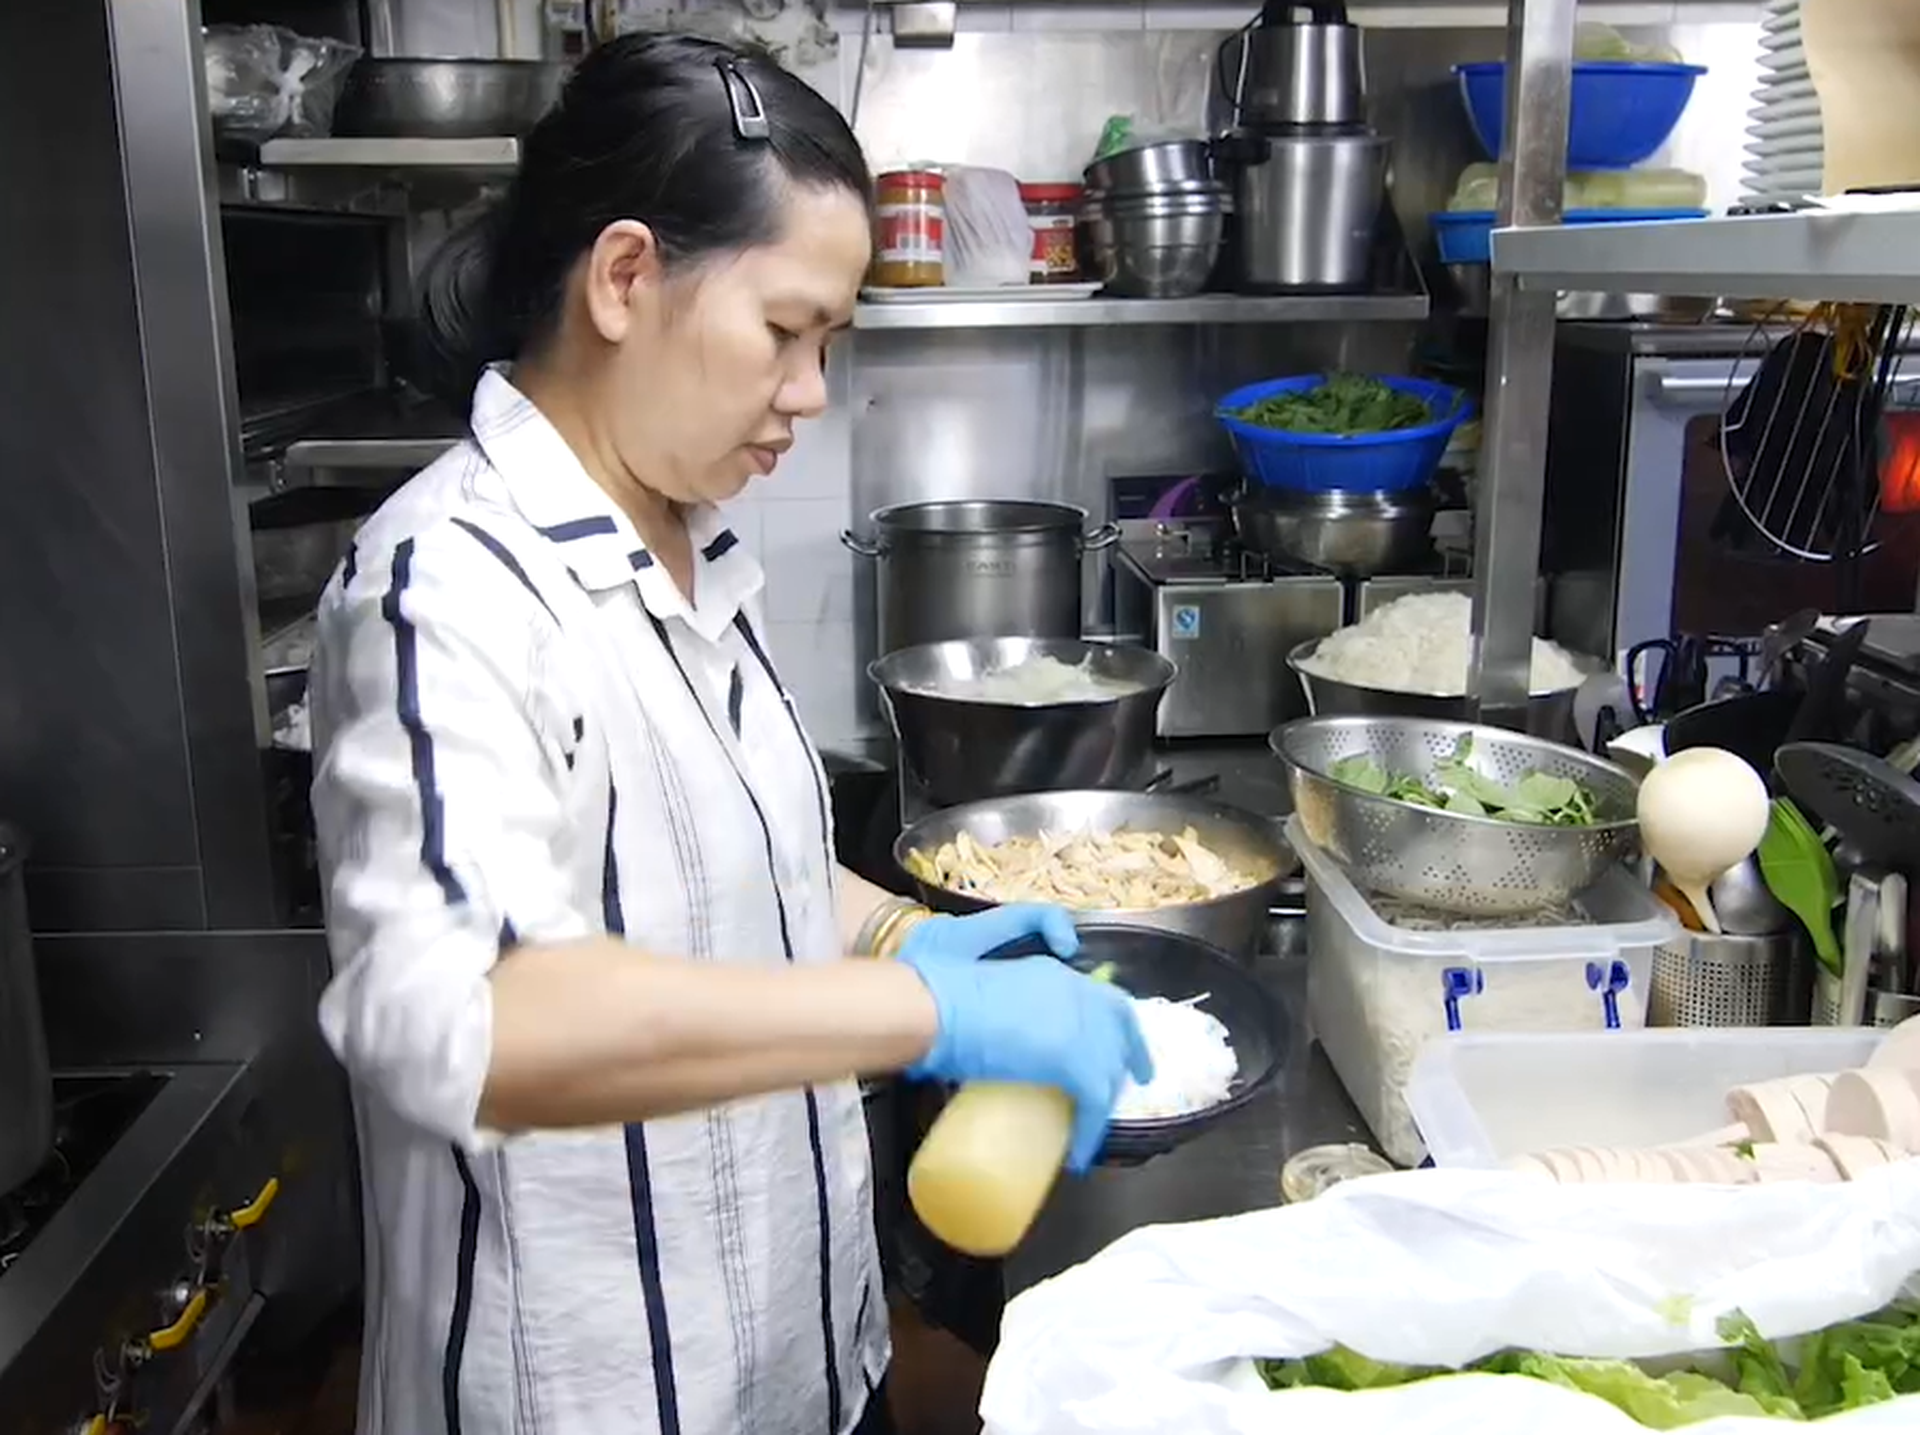 Bán bánh mì, bún bò ở Hồng Kông, người phụ nữ gốc Việt thu 100 triệu/ngày - 7